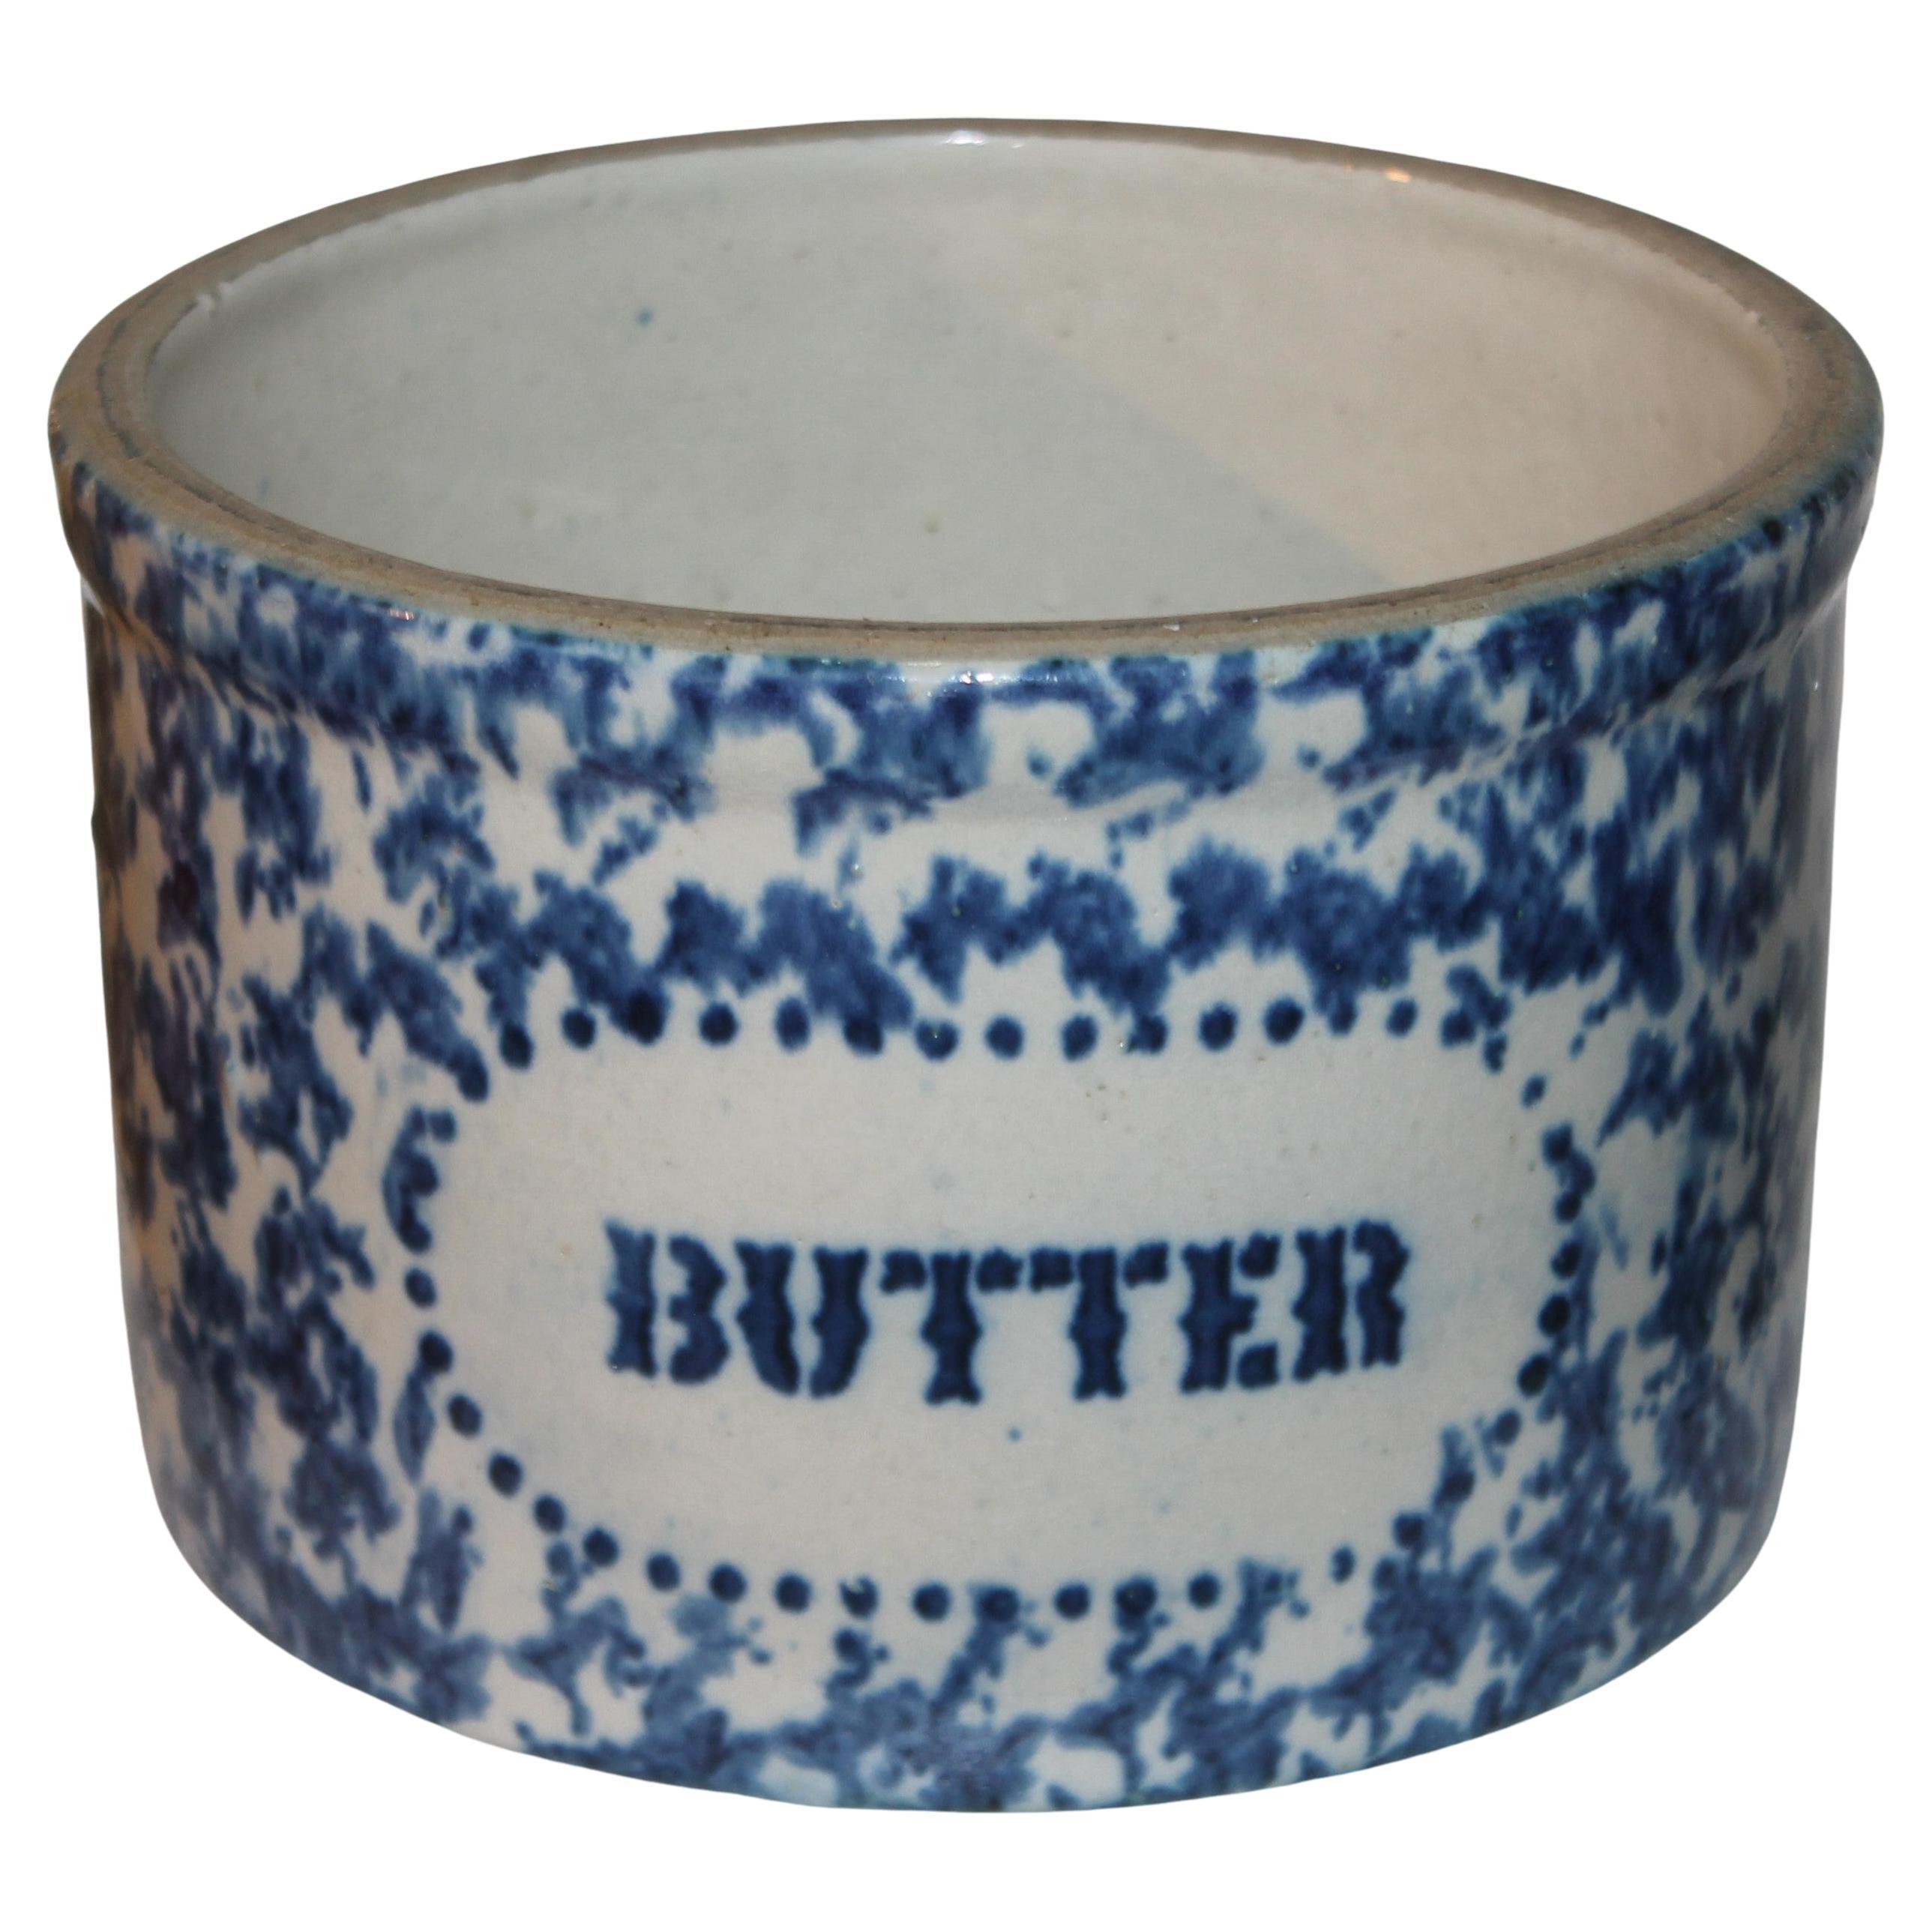 19th C Spongeware Butter Crock